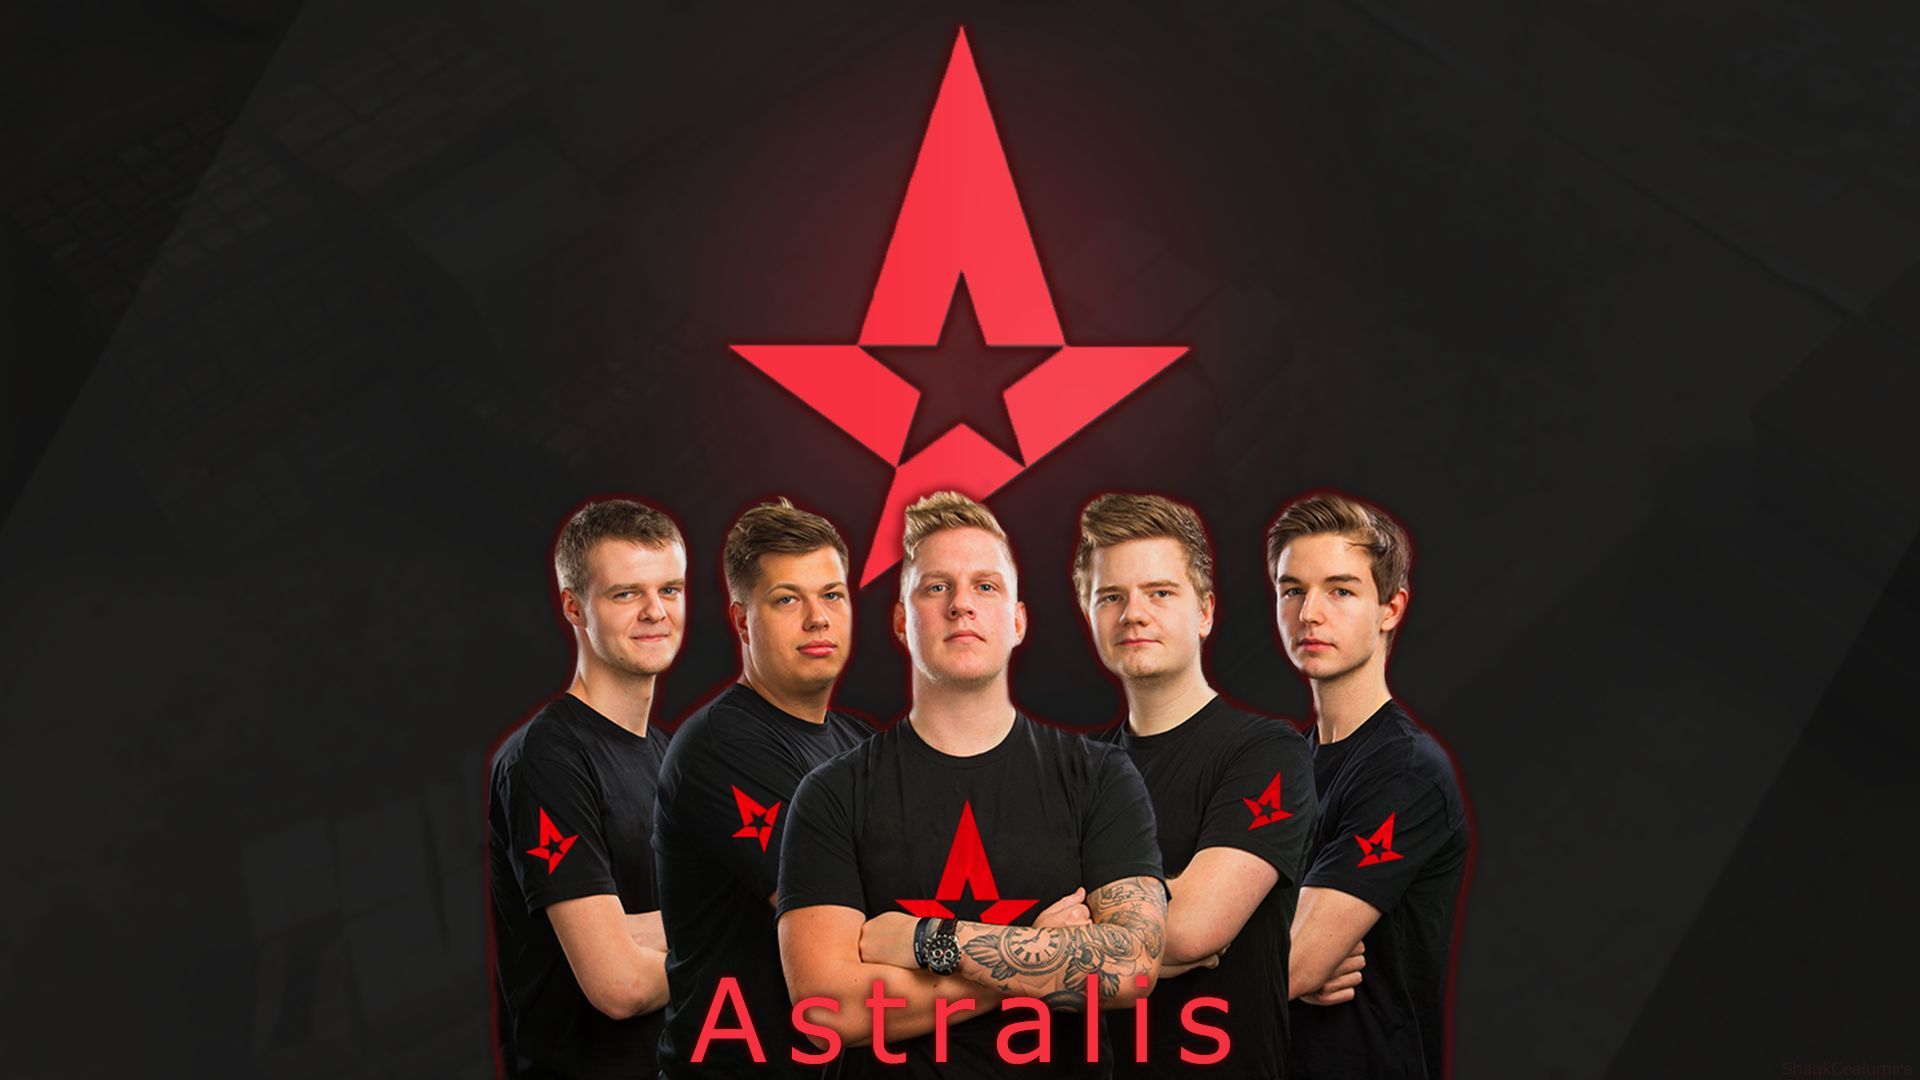 Team astralis. Австралис КС го. Киберспорт КС го астралис команда. Астралис 2022.